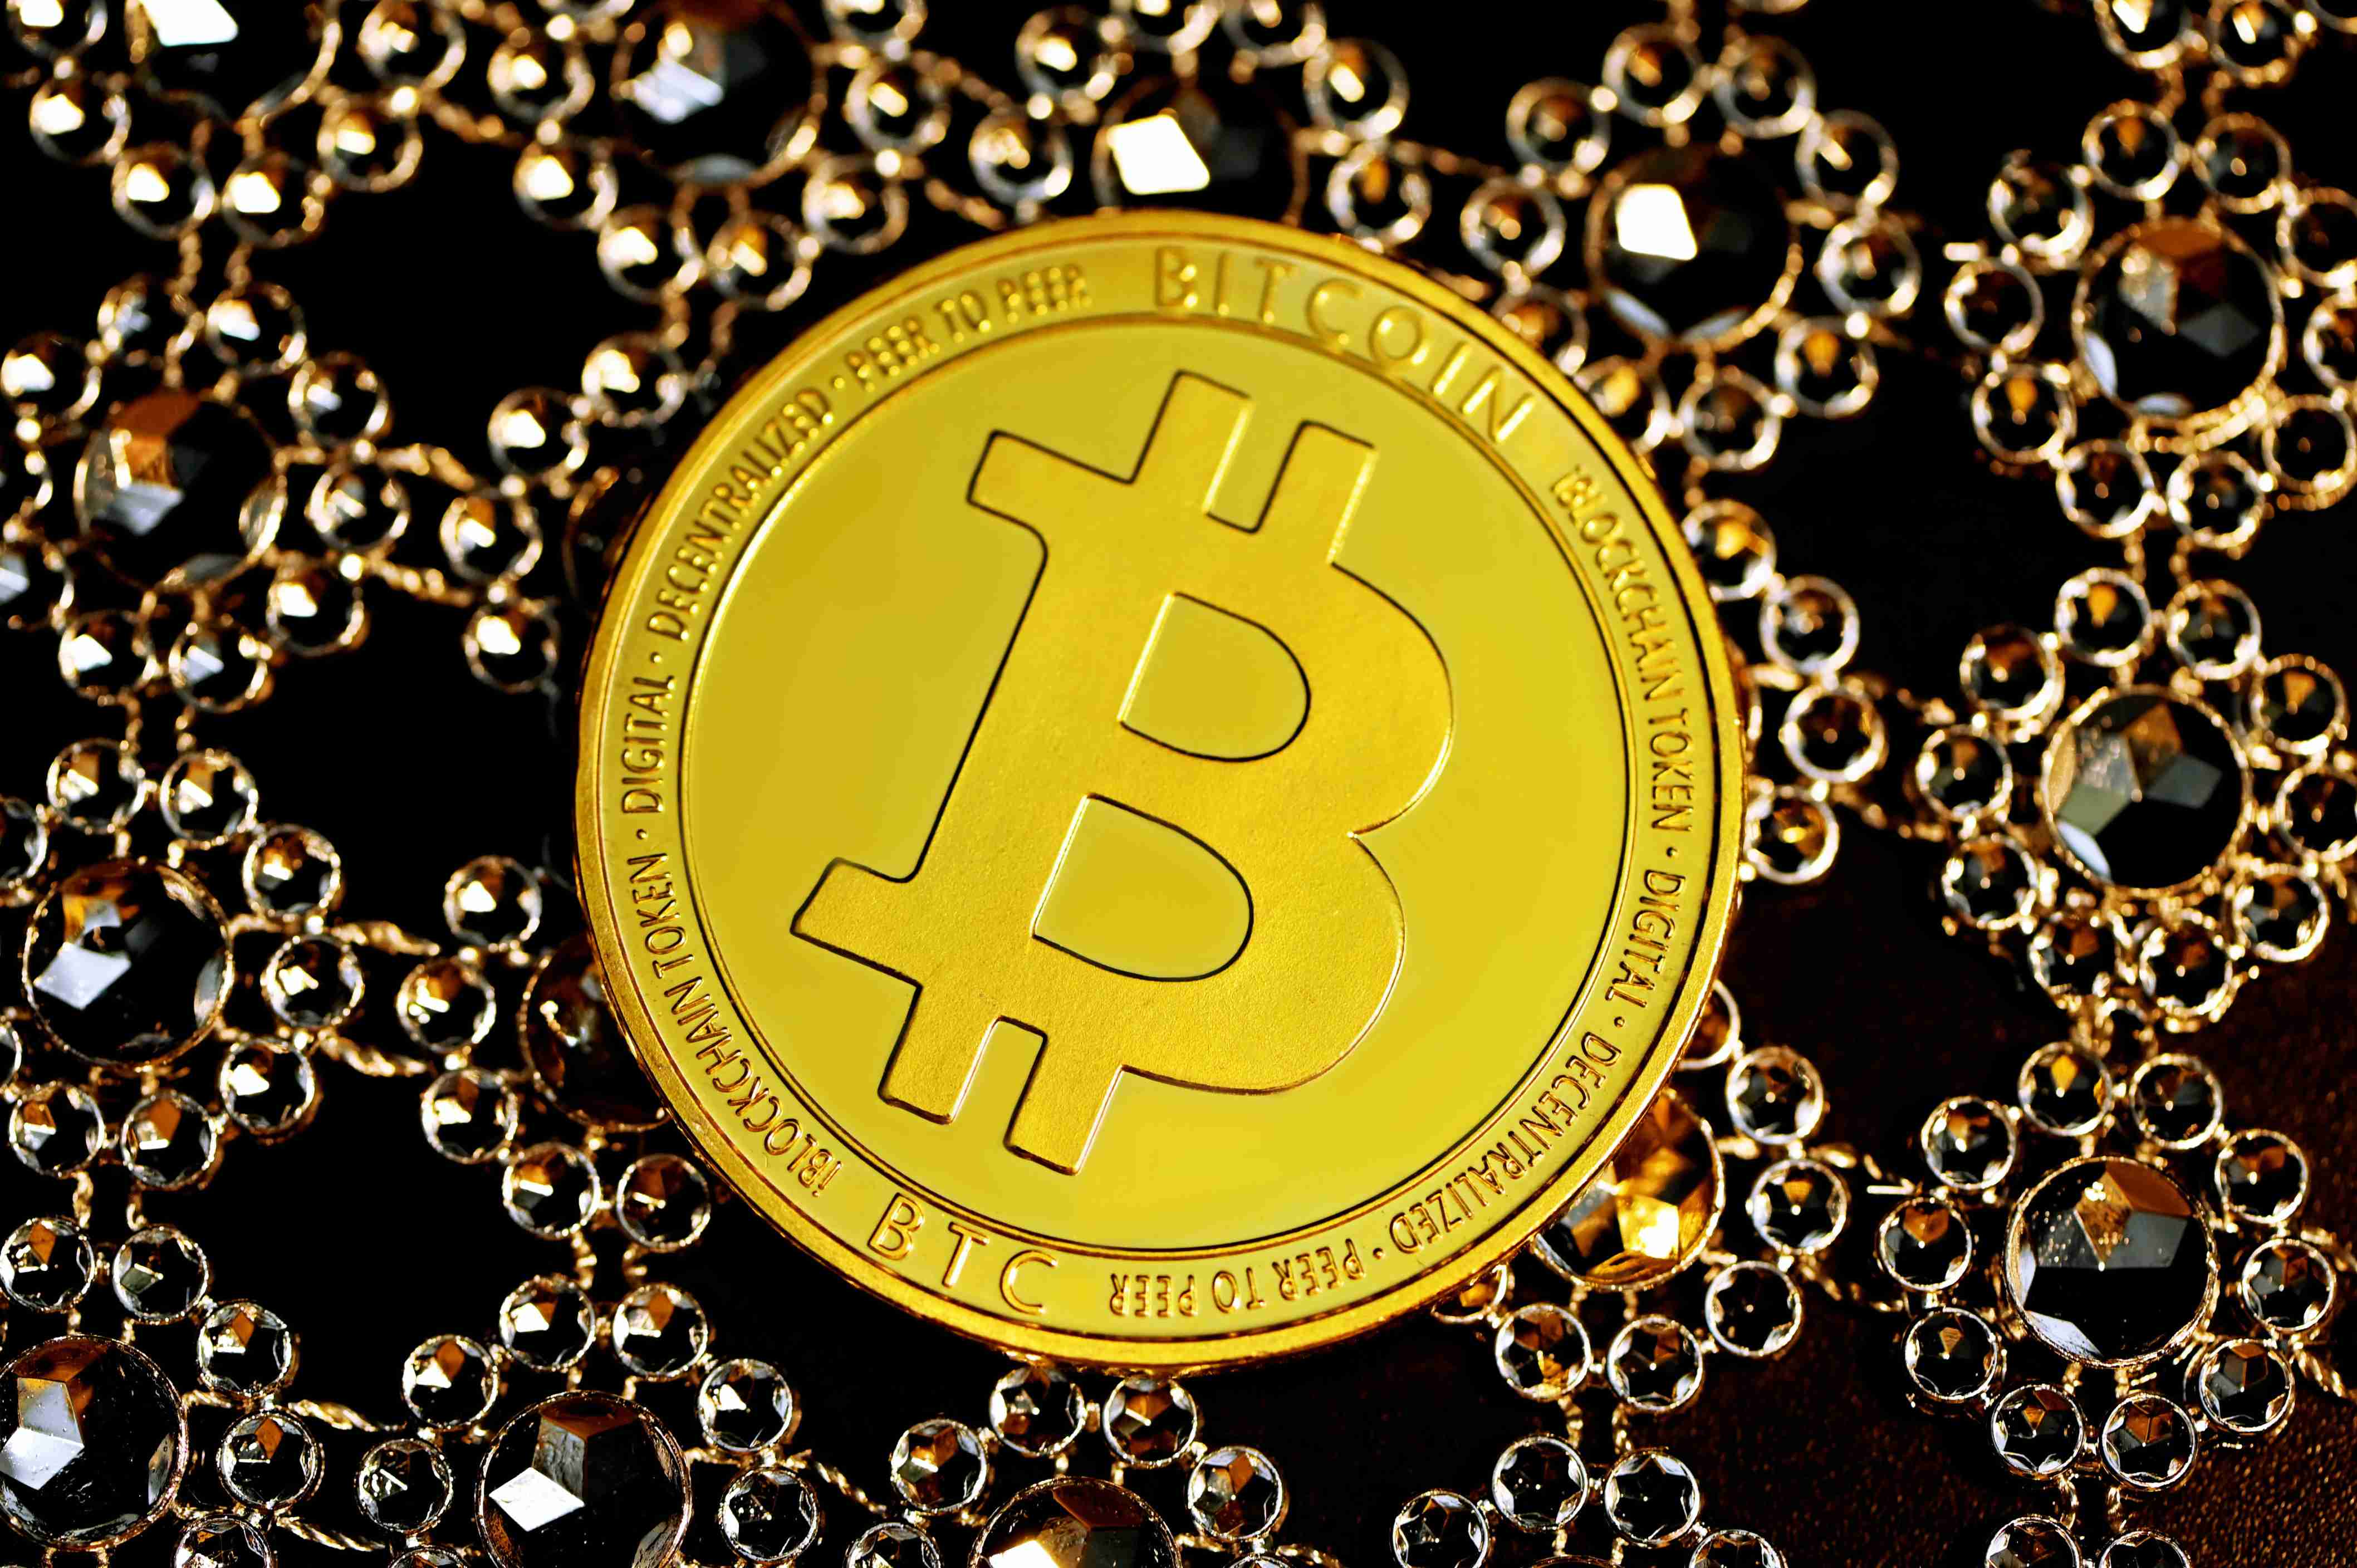 Bitcoin is not going away as a macro asset, says Mike Novogratz